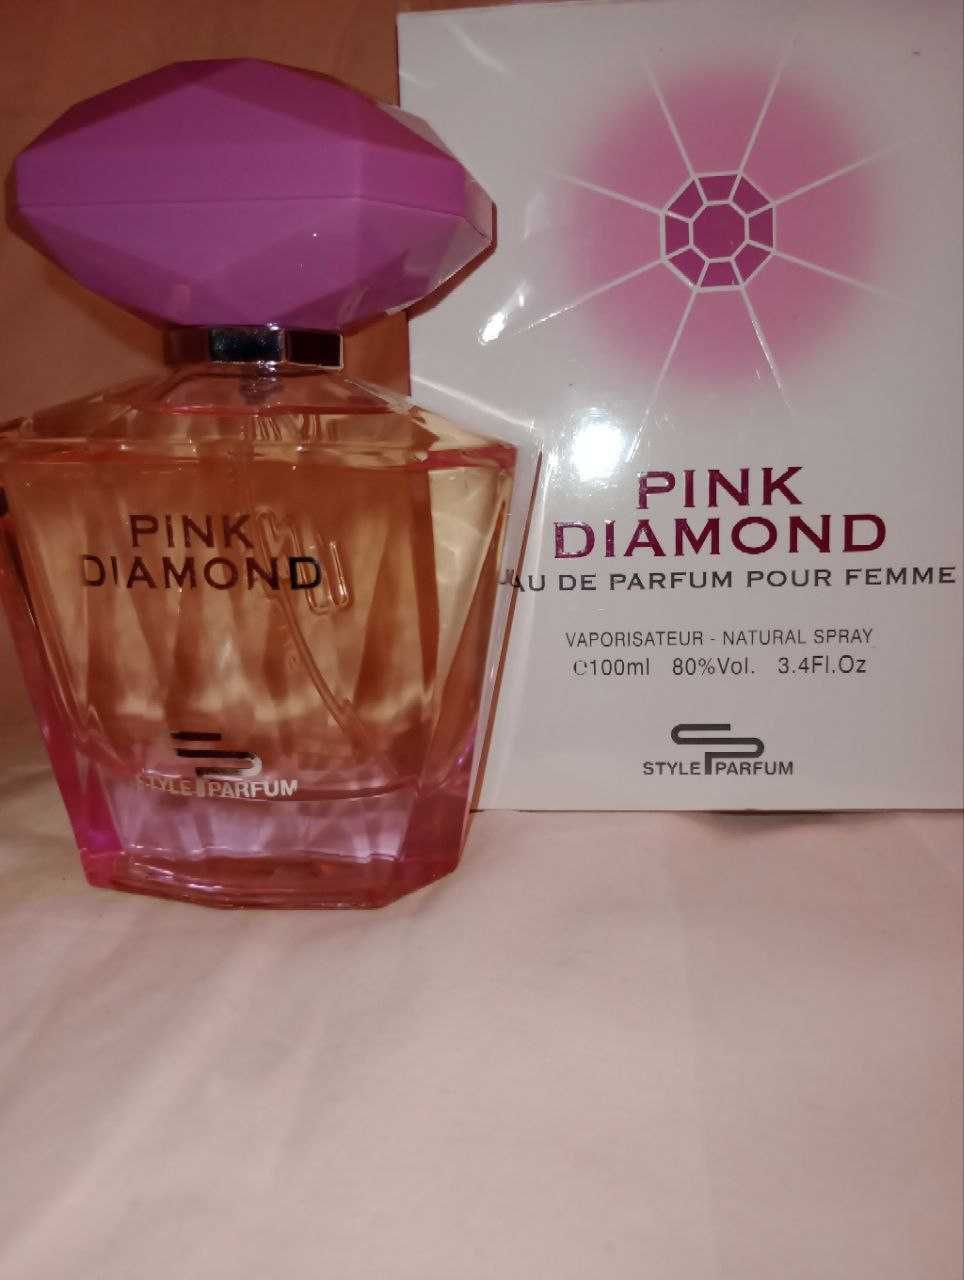 Парфюмированная вода для женщин Pink Diamond от Sterling Parfums.